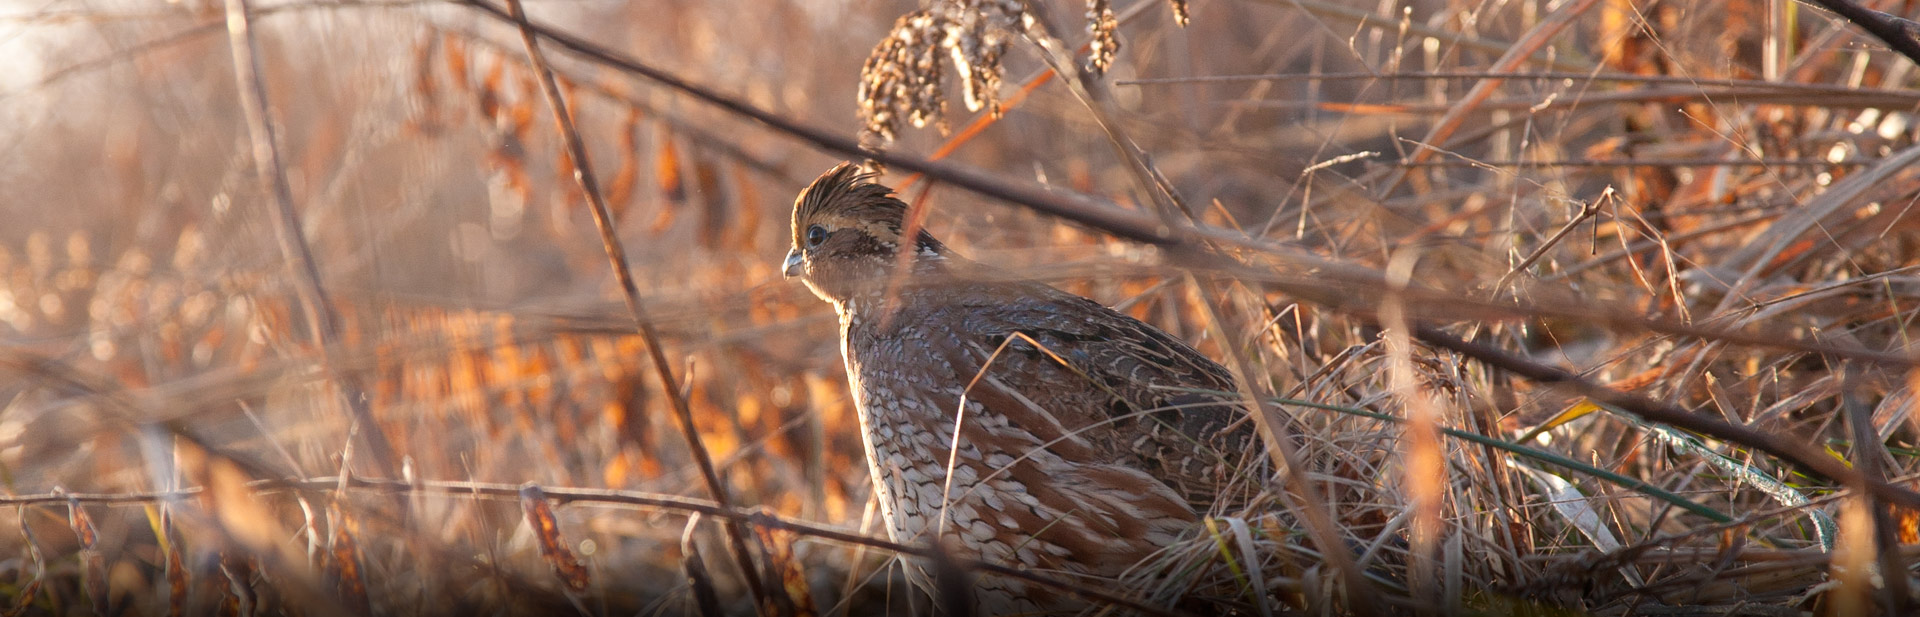 quail in grass